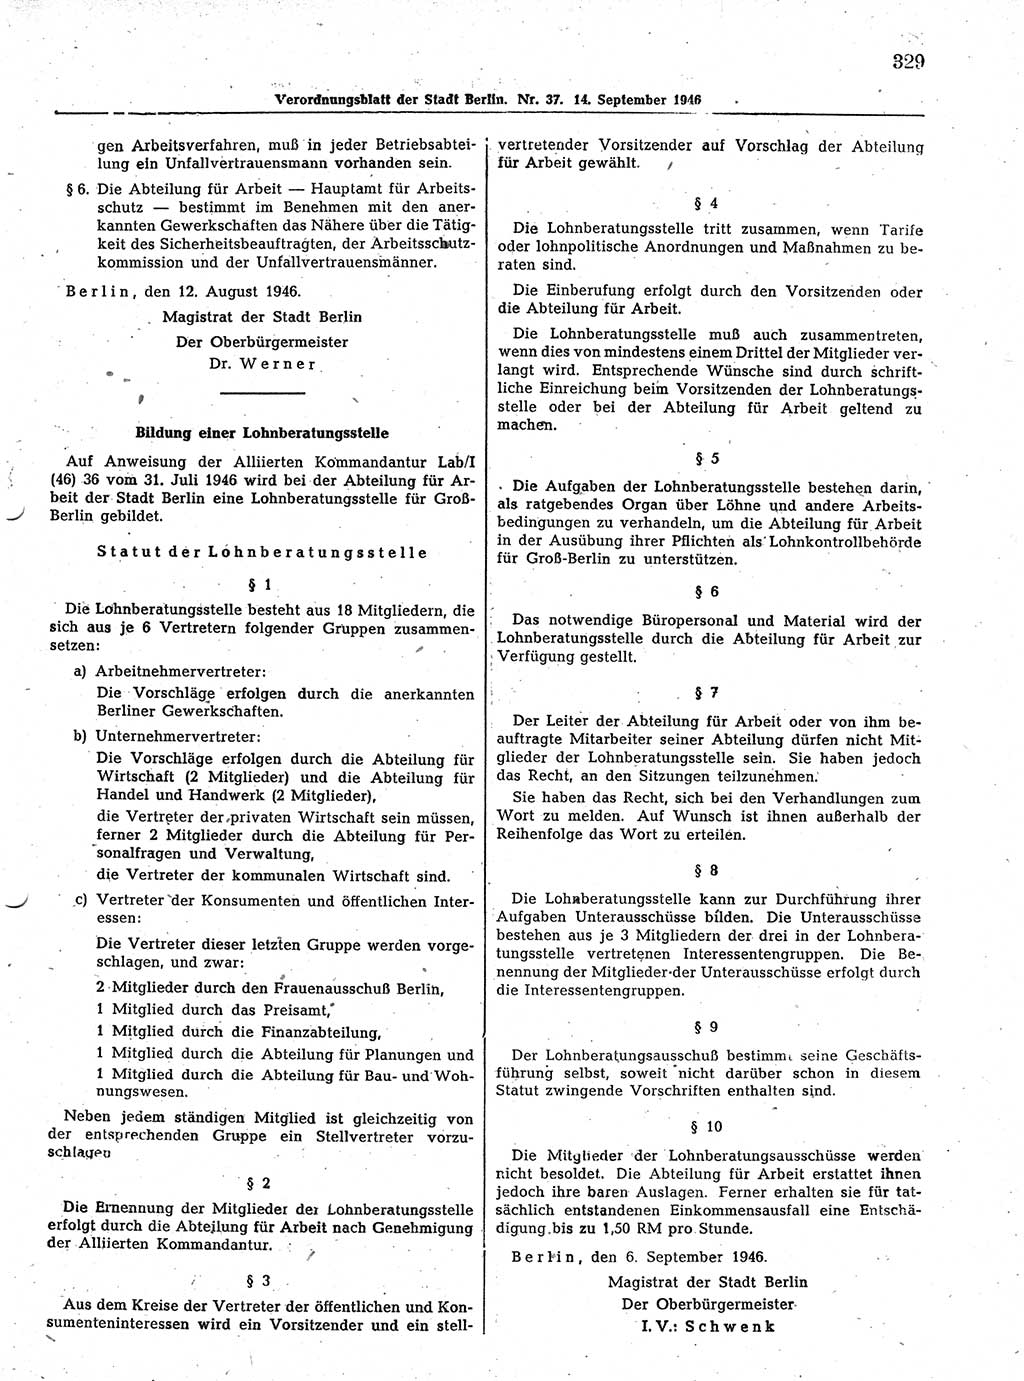 Verordnungsblatt (VOBl.) der Stadt Berlin, für Groß-Berlin 1946, Seite 329 (VOBl. Bln. 1946, S. 329)